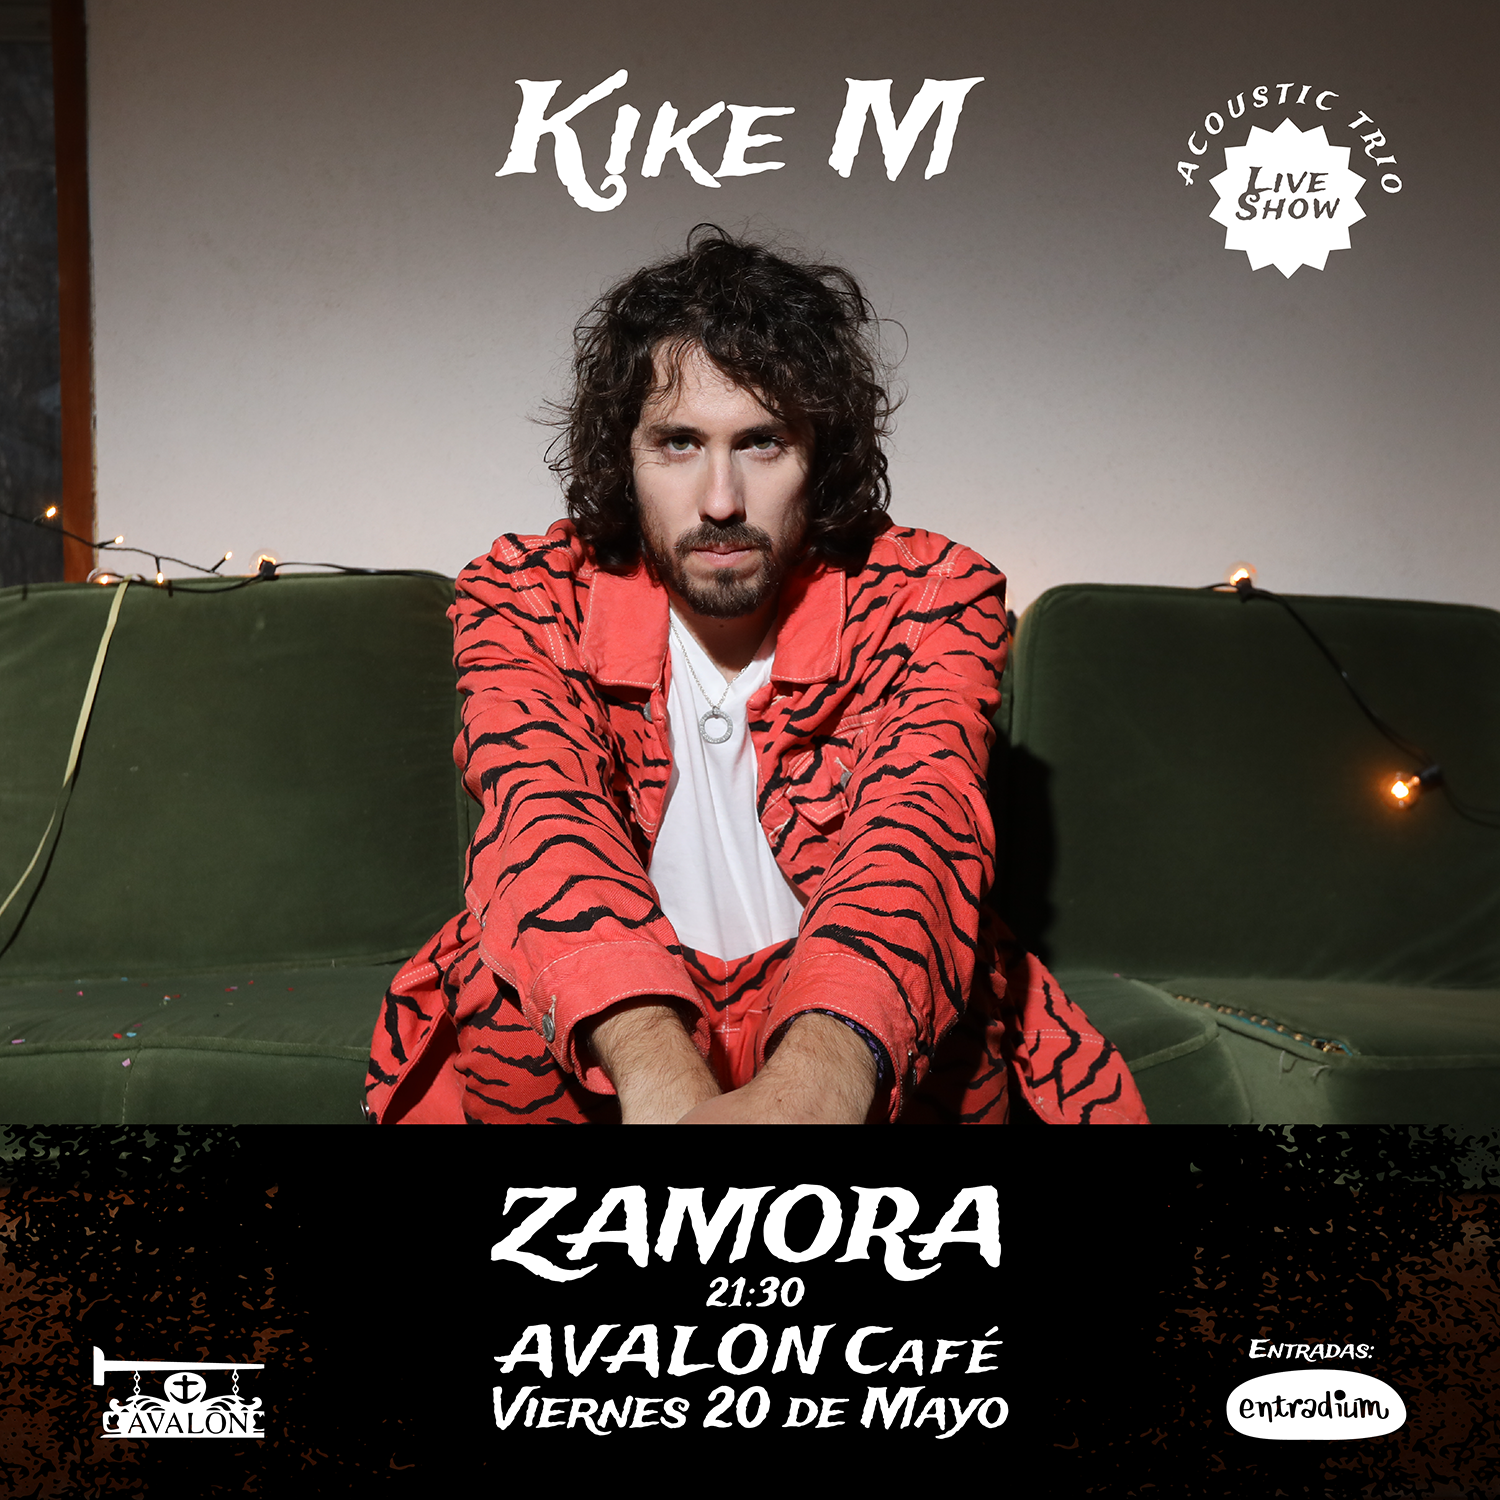 Concierto de Kike M en el Ávalon Café de Zamora